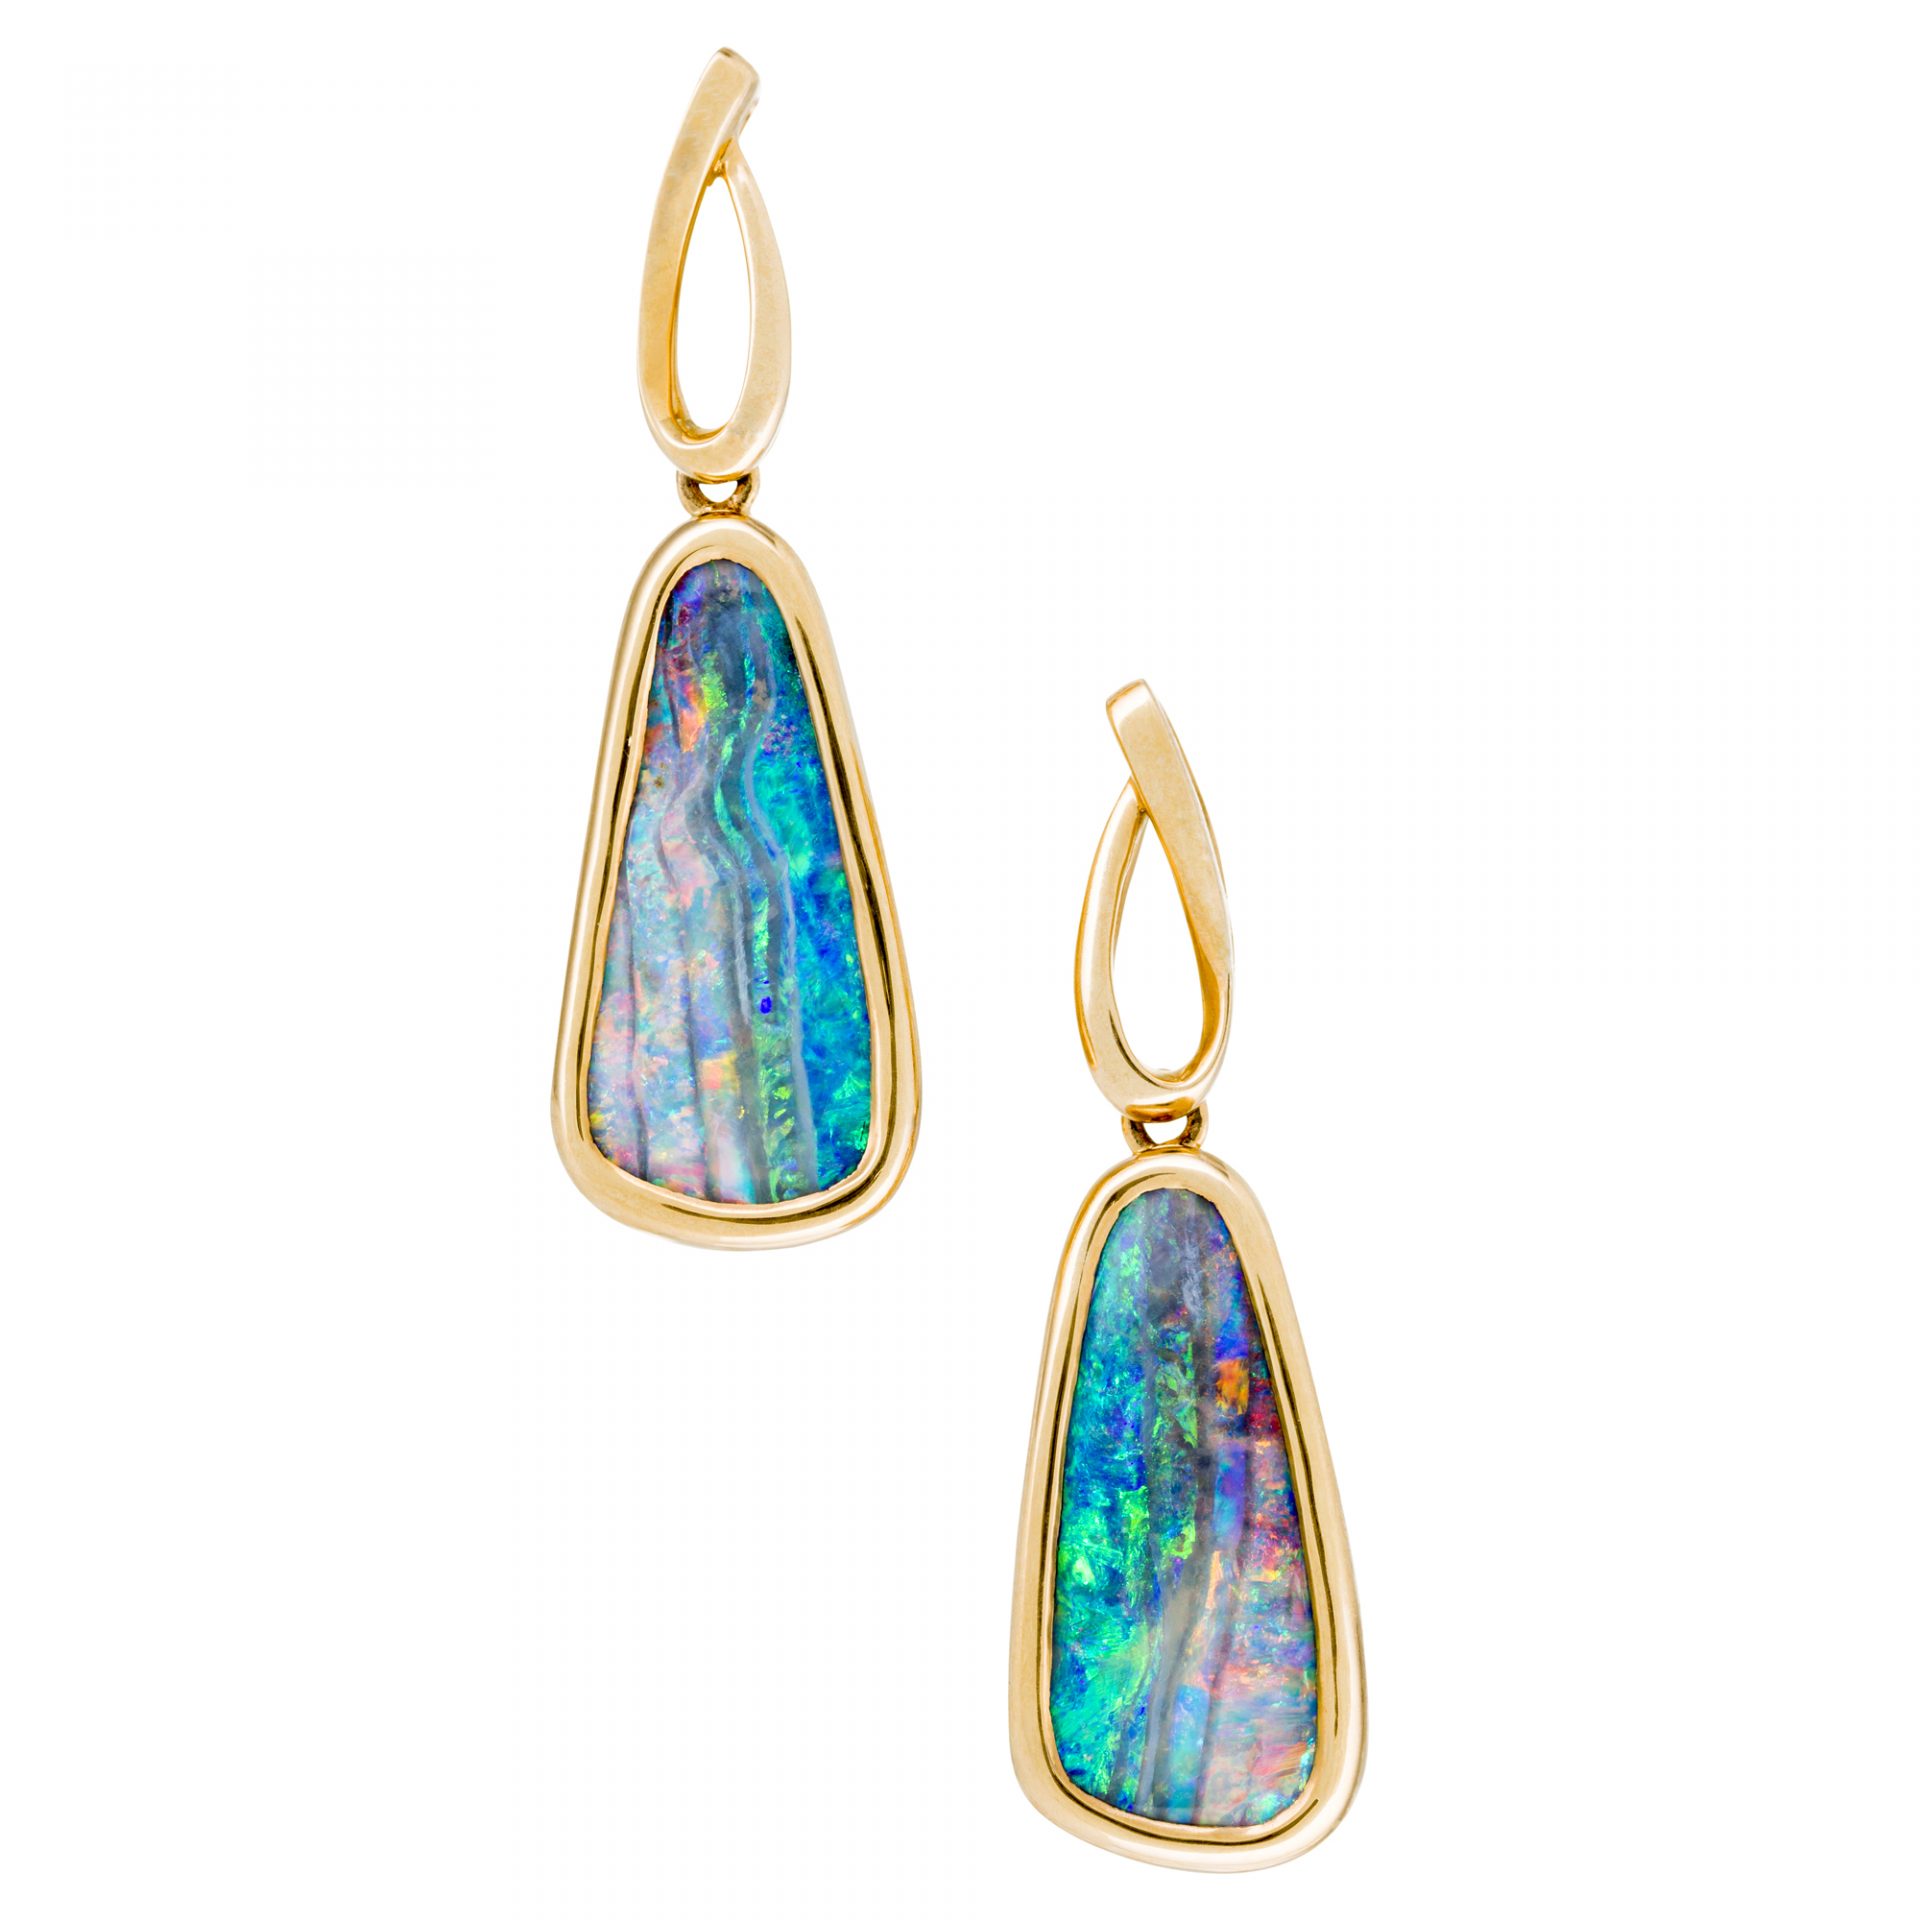 Boulder Opal Earrings in 18 ct Gold (EG007) - Opal Copying Company Pty Ltd